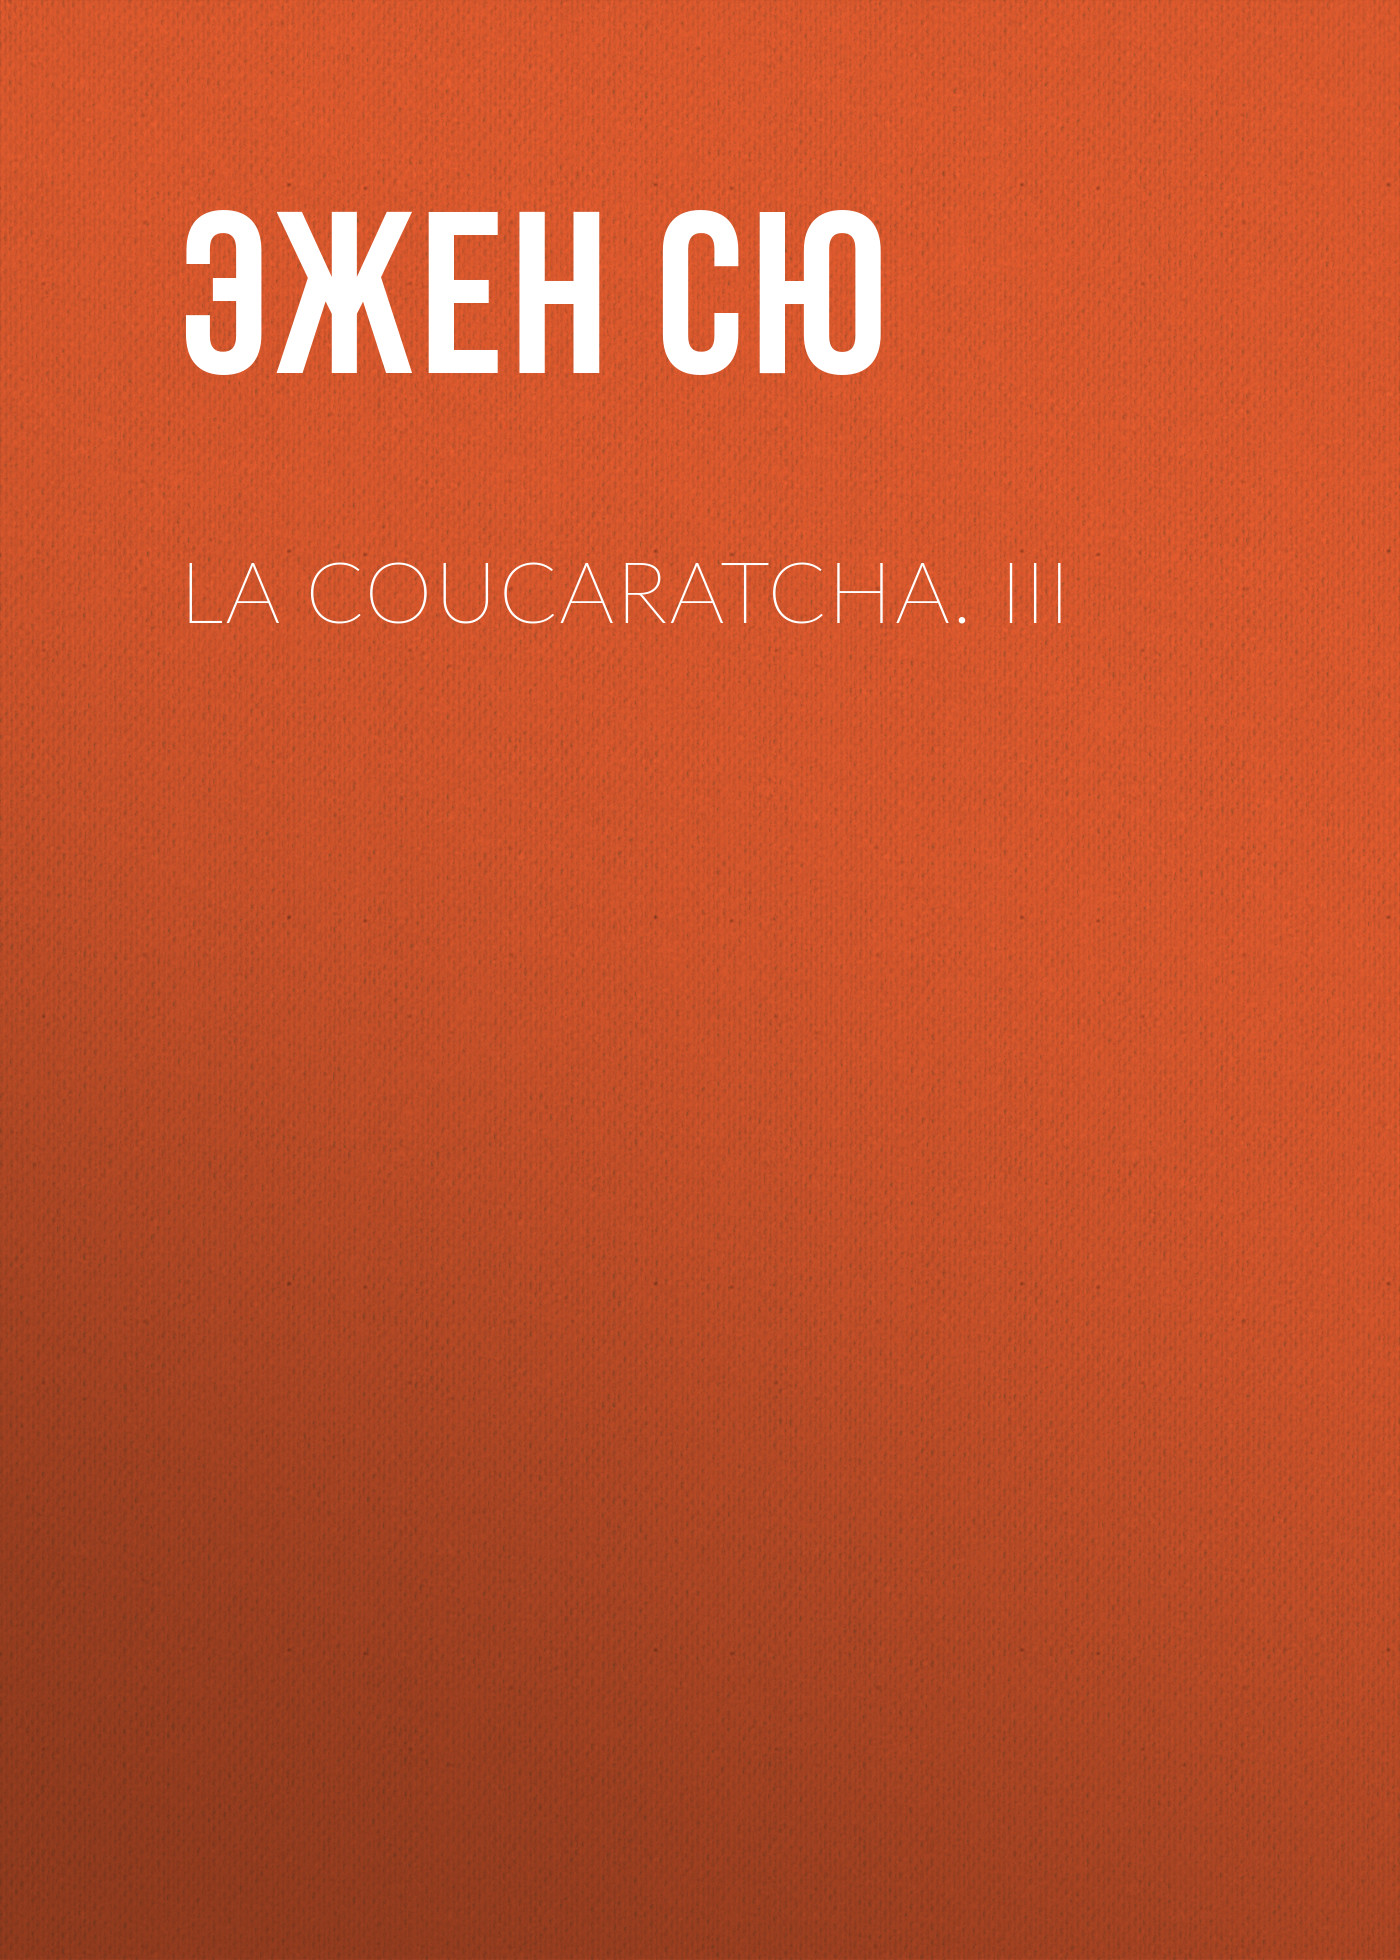 Книга La coucaratcha. III из серии , созданная Эжен Сю, может относится к жанру Литература 19 века, Зарубежная старинная литература, Зарубежная классика. Стоимость электронной книги La coucaratcha. III с идентификатором 25476839 составляет 0 руб.